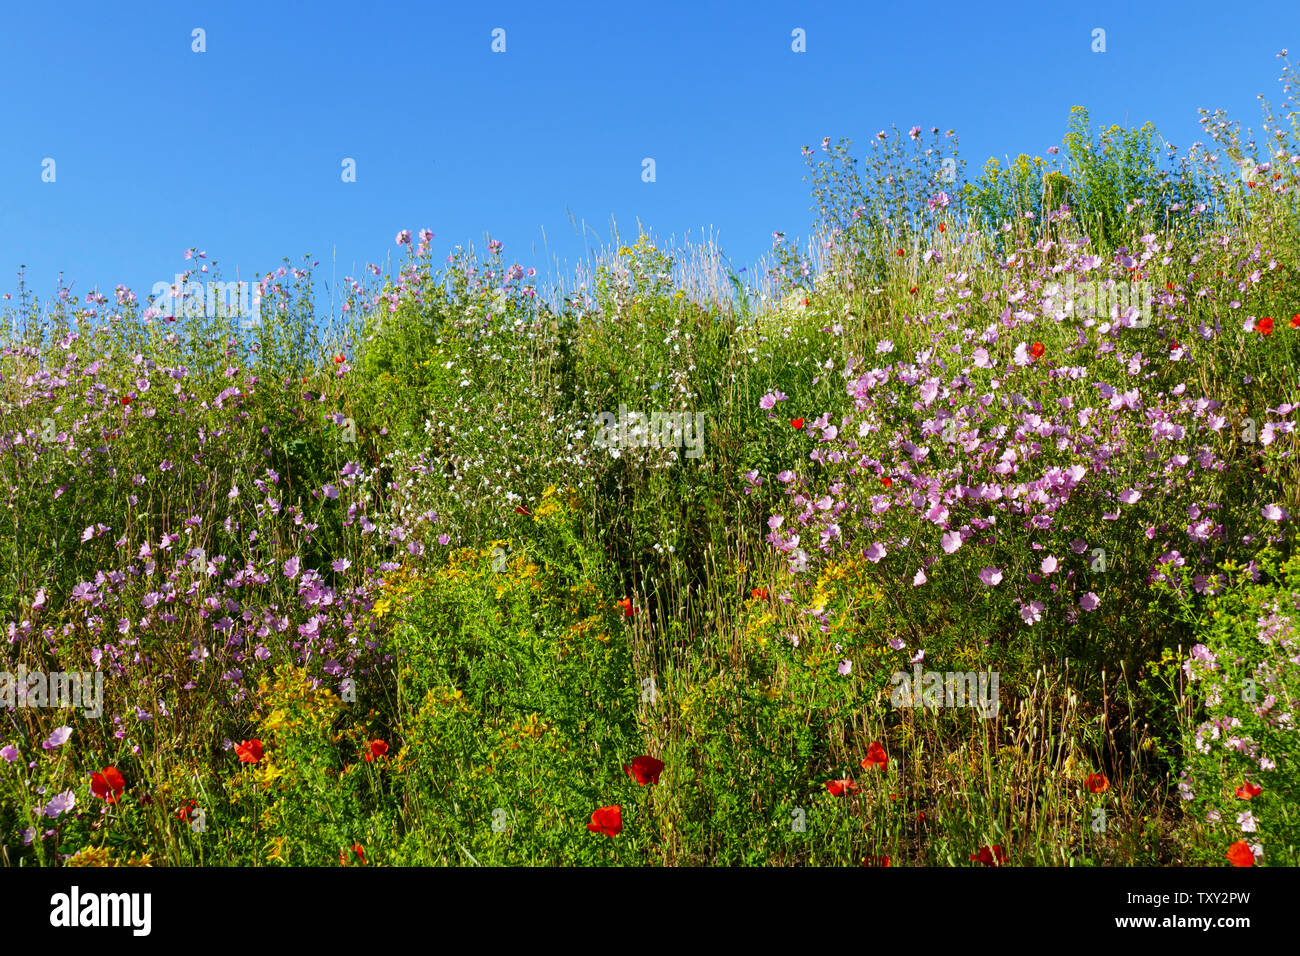 Wiese, Blumenwiese mit bunten, farbigen Blumen und Gras im Sommer Stock Photo